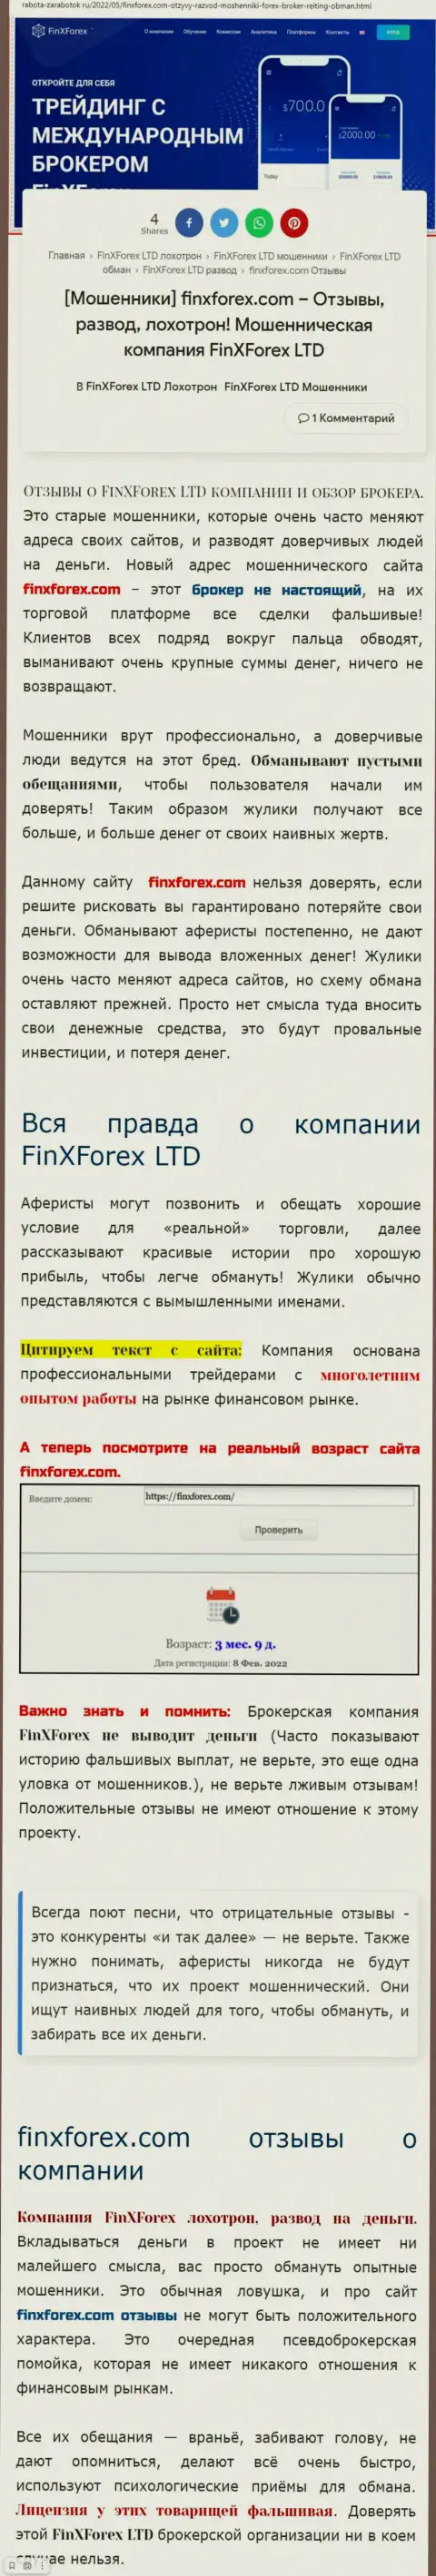 Автор обзорной статьи о FinXForex LTD пишет, что в FinXForex разводят